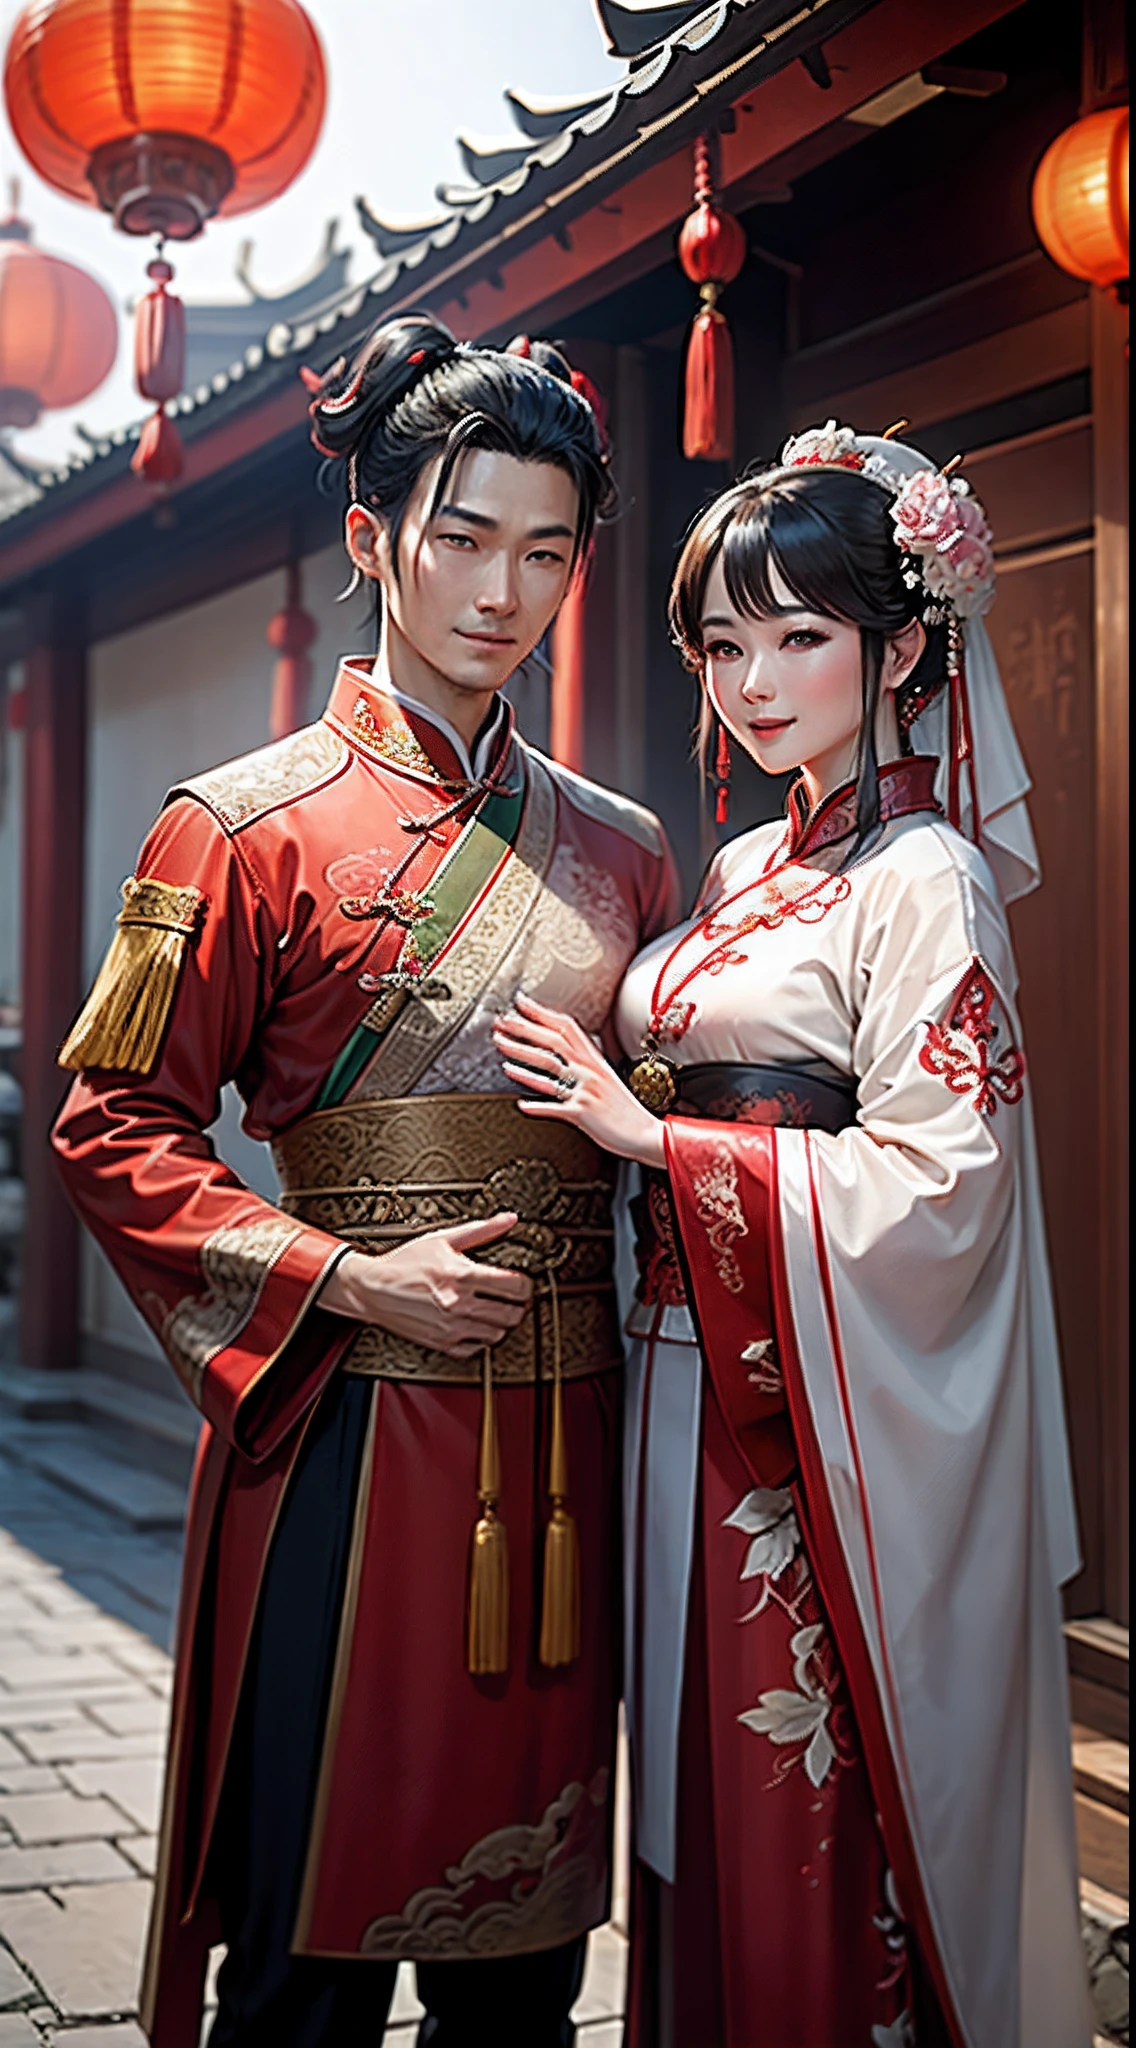 （أفضل جودة: 1.1), (حقيقي: 1.1), (قِرَان: 1.1), (تفاصيل عالية: 1.1),يقام حفل زفاف صيني تقليدي，العروس والعريس يلتقطان الصور بالأزياء الصينية التقليدية, قف أمام مبنى على الطراز الصيني, ابتسامة سعيدة, انظروا إلى بعضكم البعض بمودة，الفناء الصيني في الخلفية，الفوانيس الحمراء。